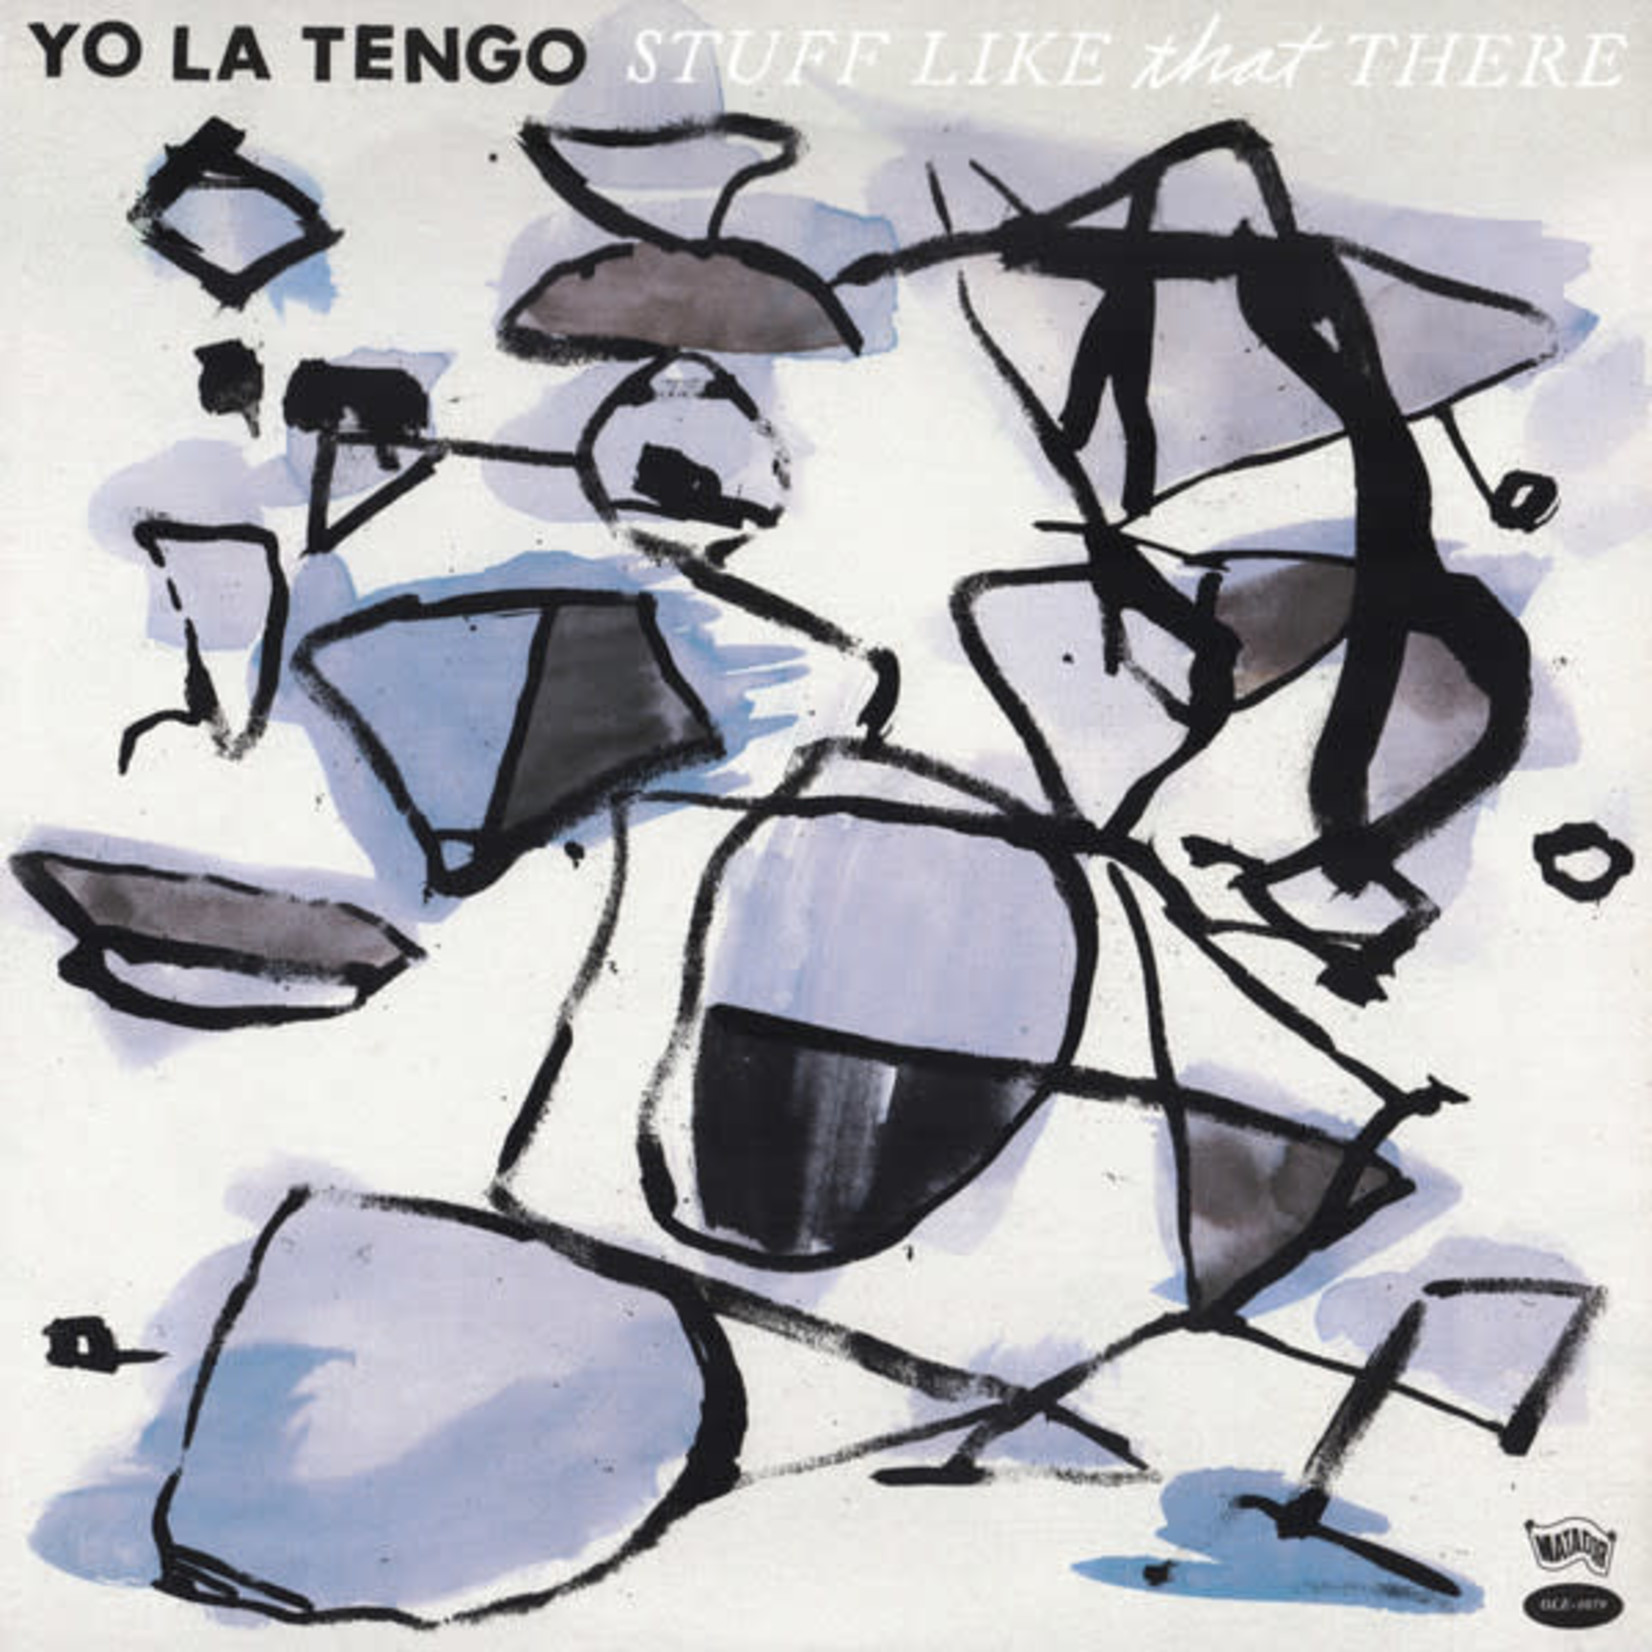 Matador Yo La Tengo - Stuff Like That There (LP)